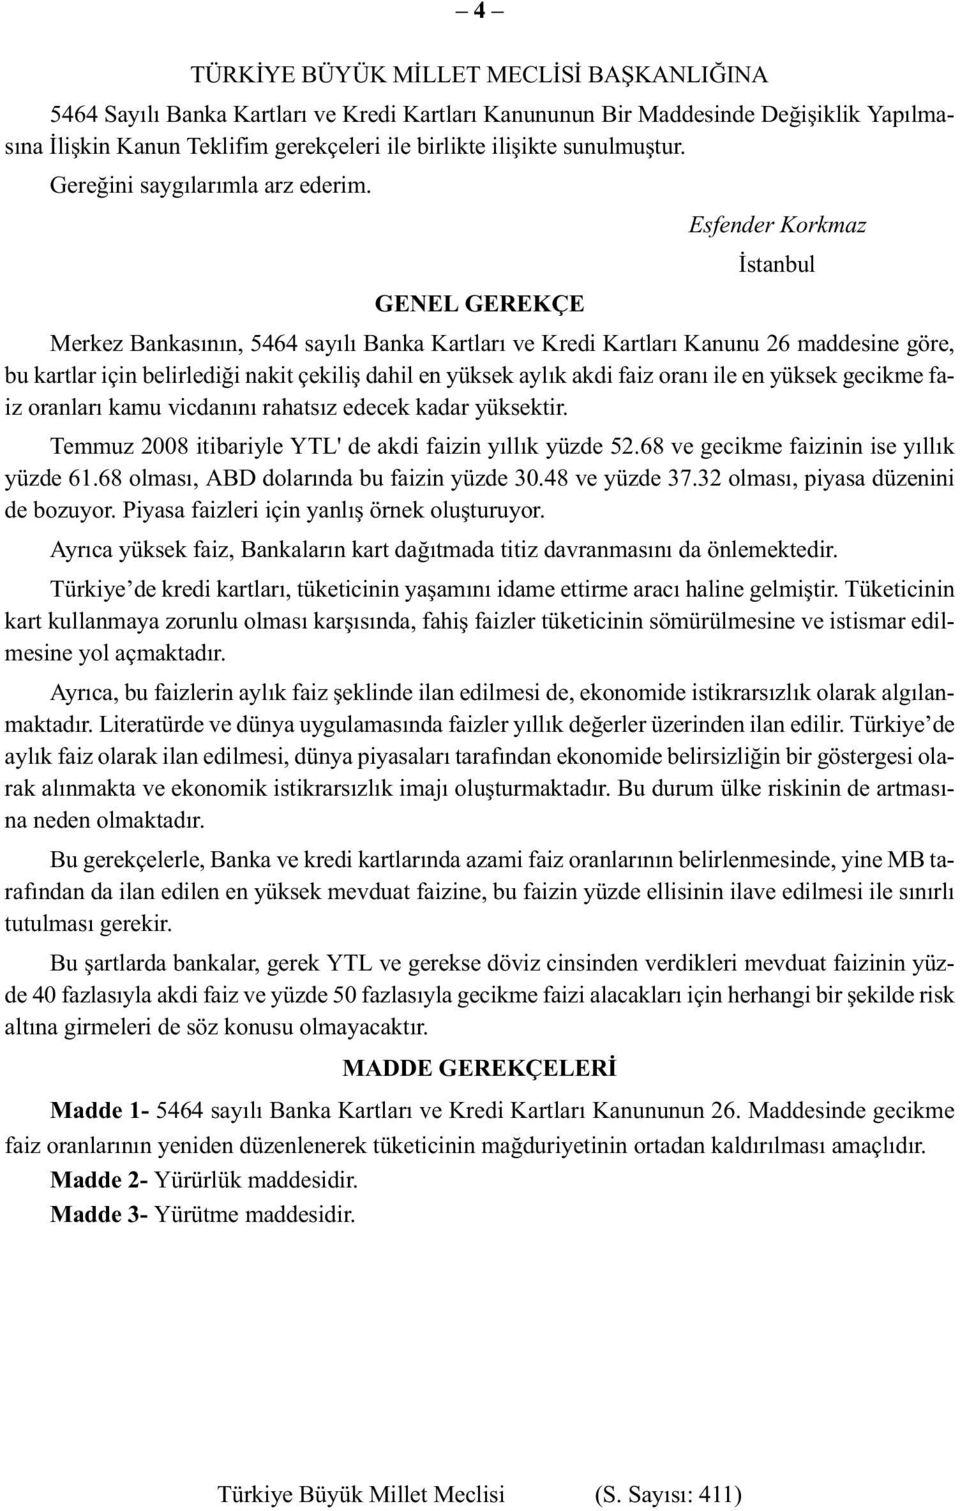 Esfender Korkmaz İstanbul GENEL GEREKÇE Merkez Bankasının, 5464 sayılı Banka Kartları ve Kredi Kartları Kanunu 26 maddesine göre, bu kartlar için belirlediği nakit çekiliş dahil en yüksek aylık akdi